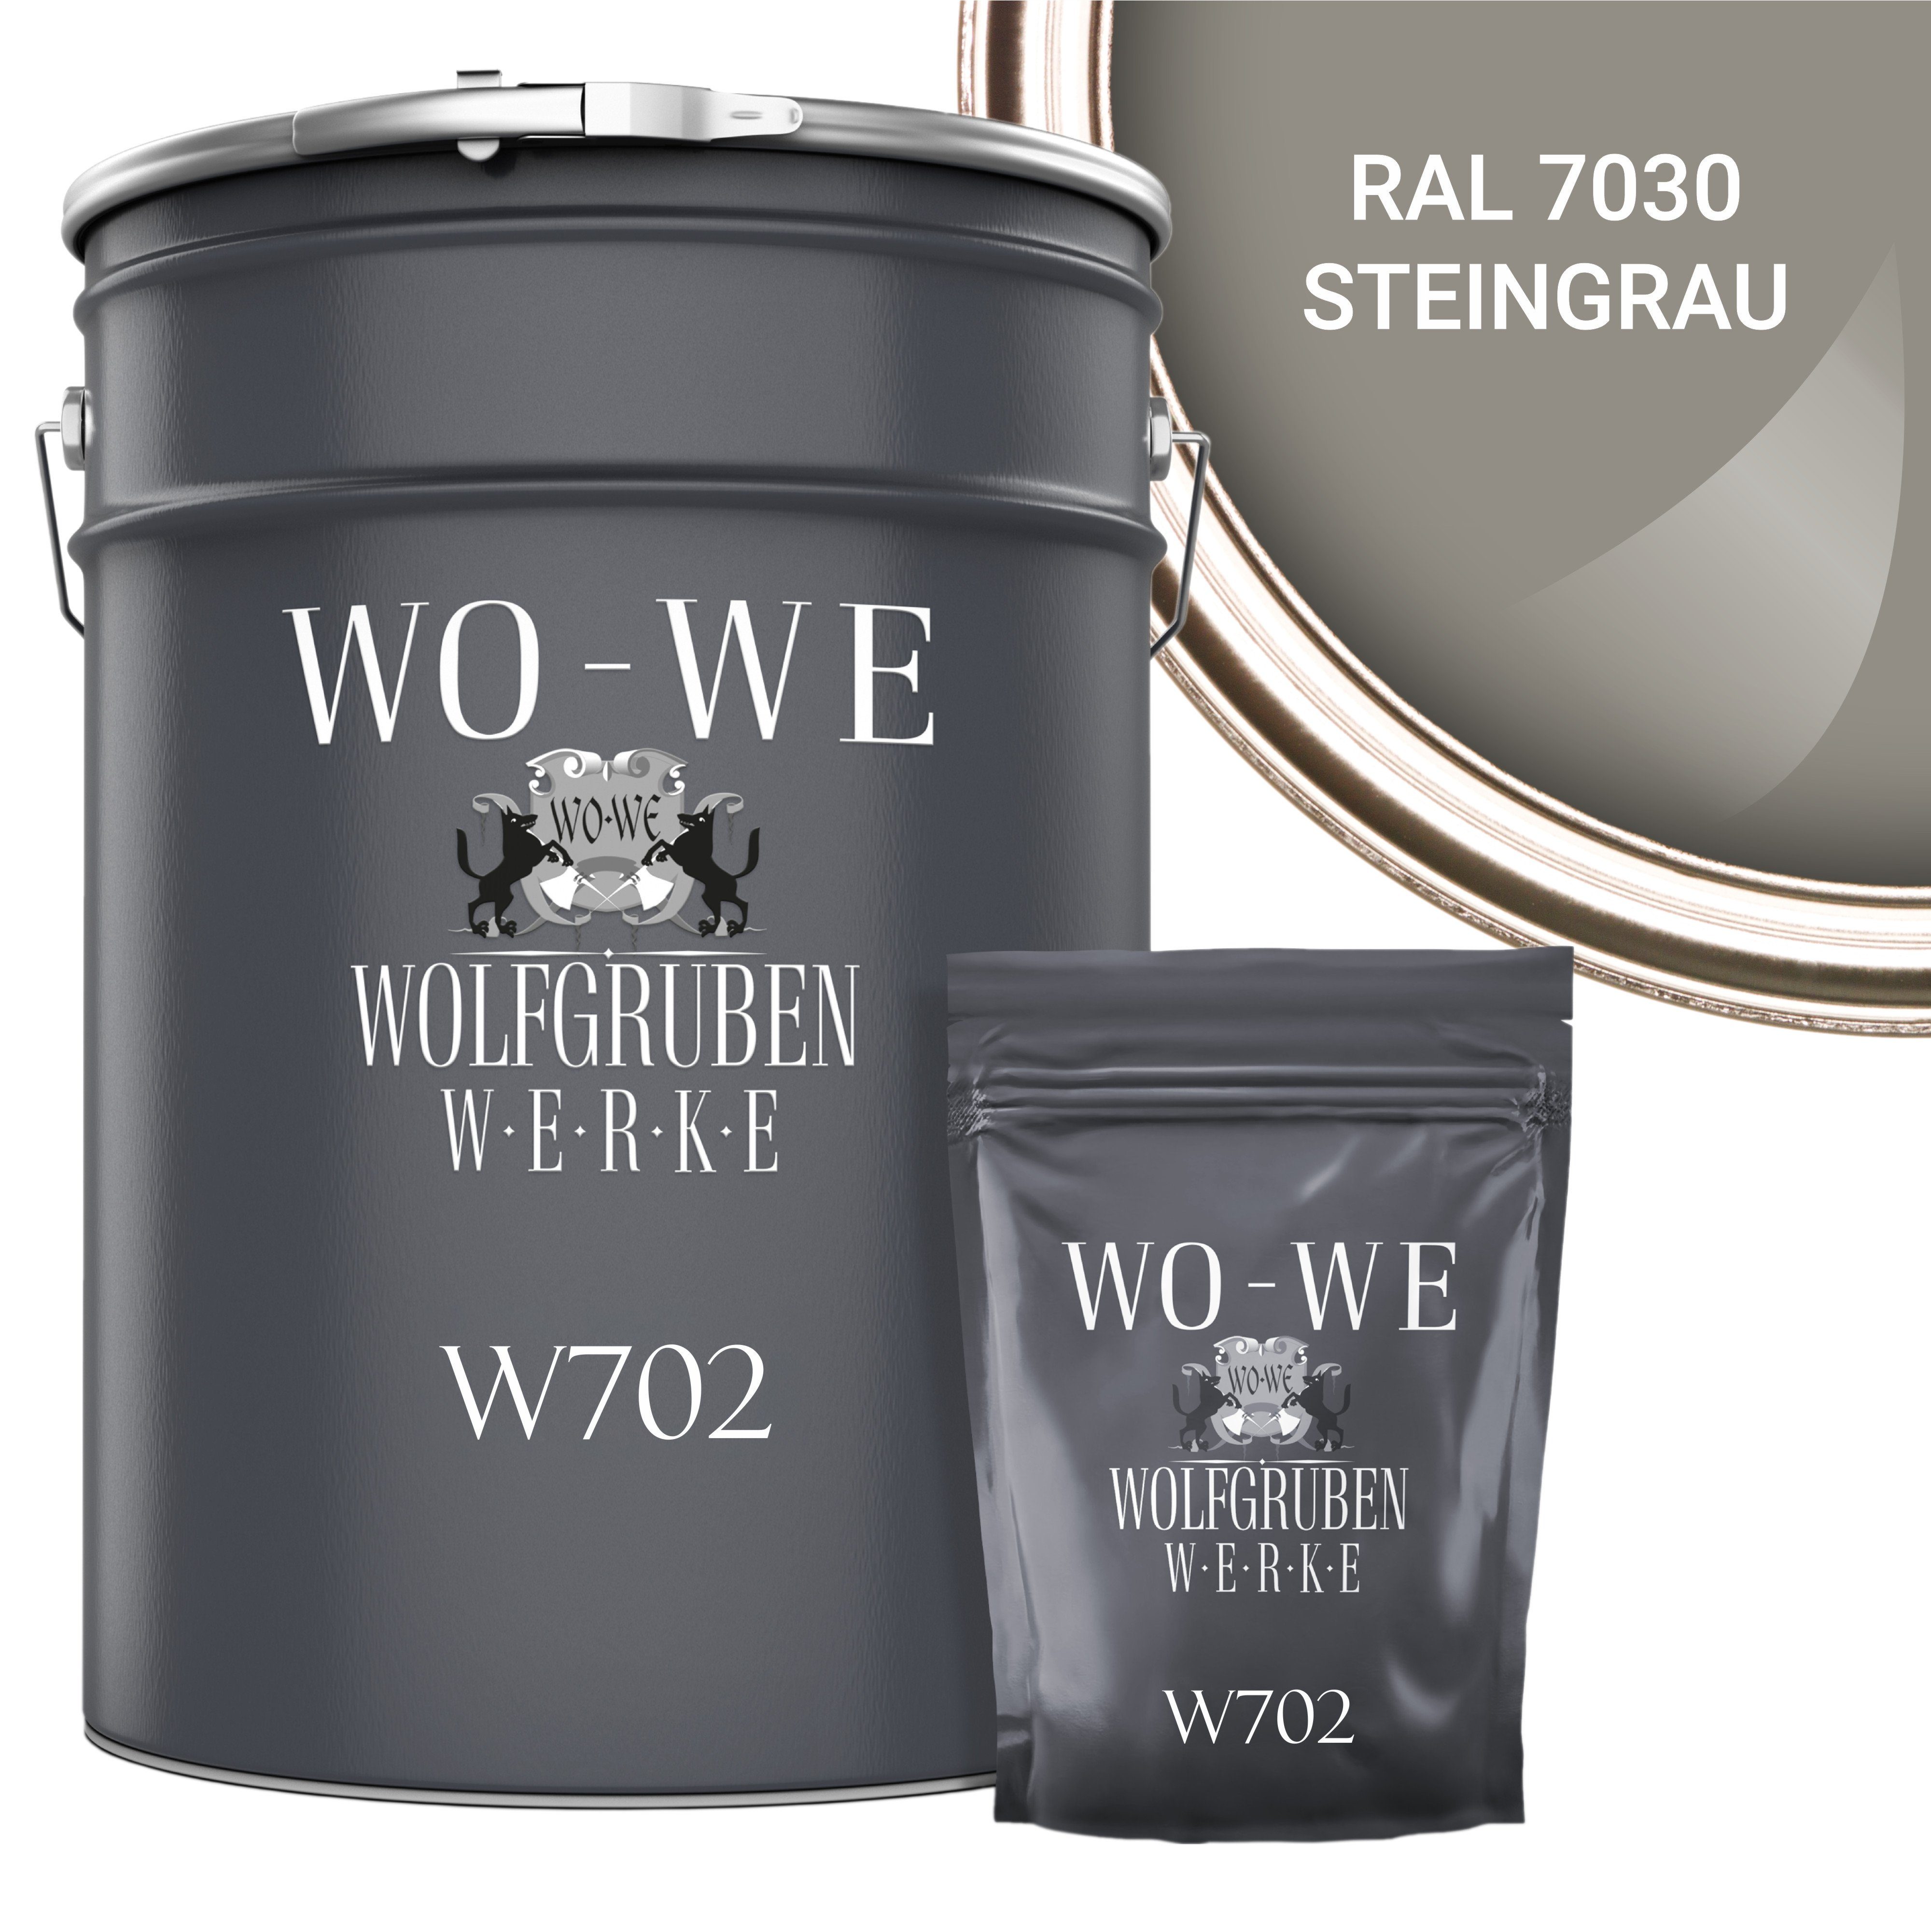 WO-WE Bodenversiegelung 2K Garagenfarbe Bodenbeschichtung W702, 2,5-20Kg, Seidenglänzend, Epoxidharz RAL 7030 Steingrau